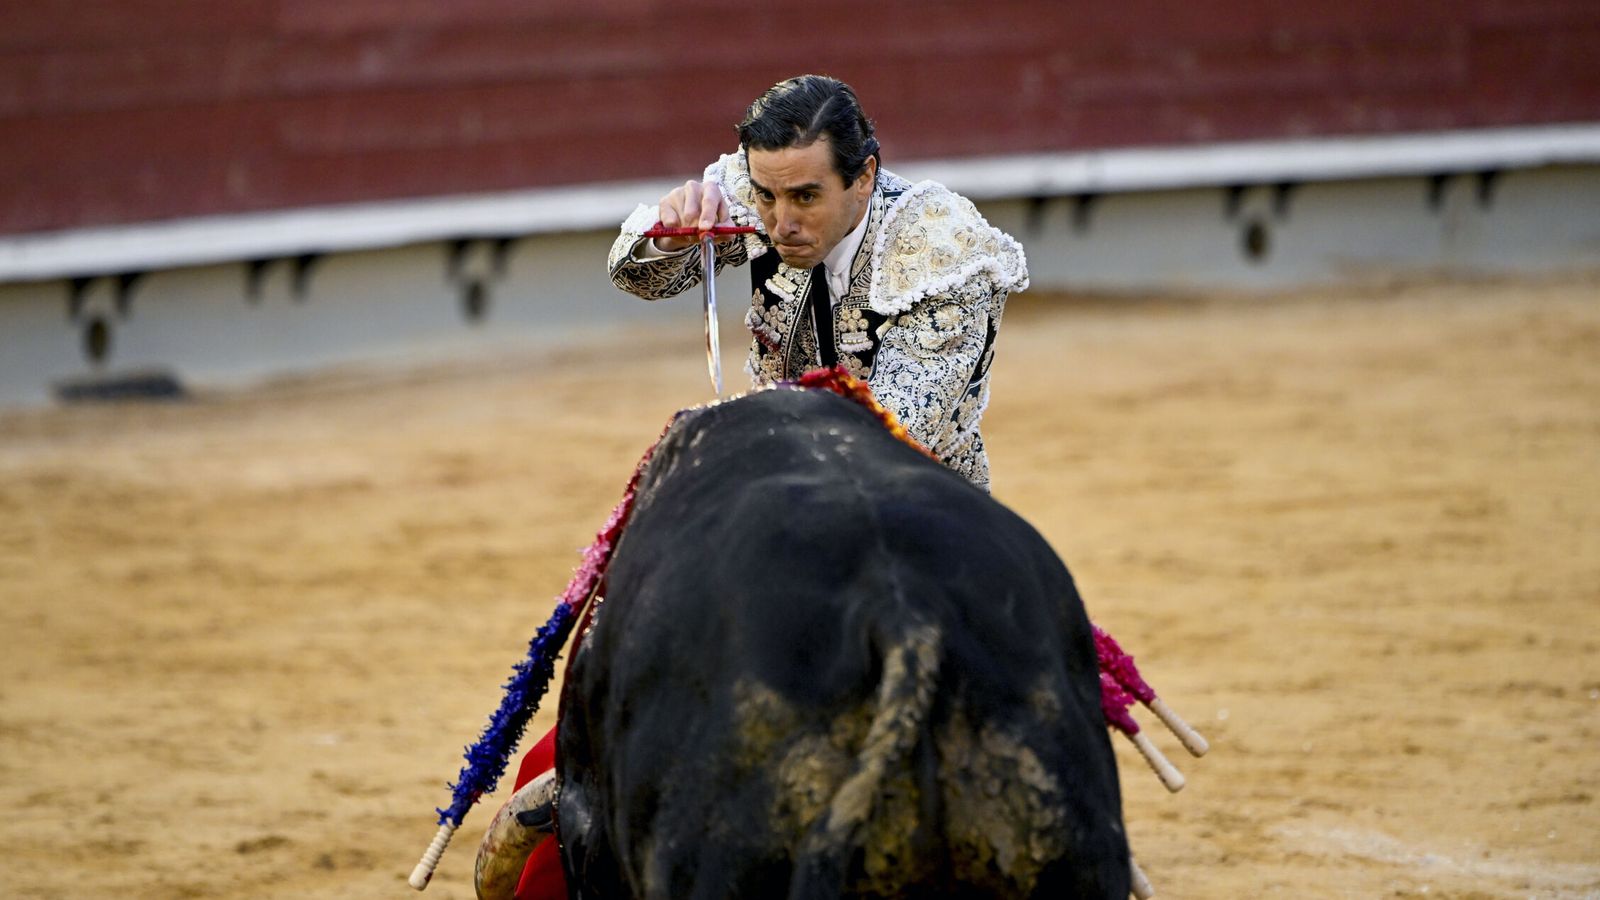 Juan Ortega lidia su segundo toro durante el festejo de la Feria de la Magdalena, en la plaza de toros de Castellón. (EFE)